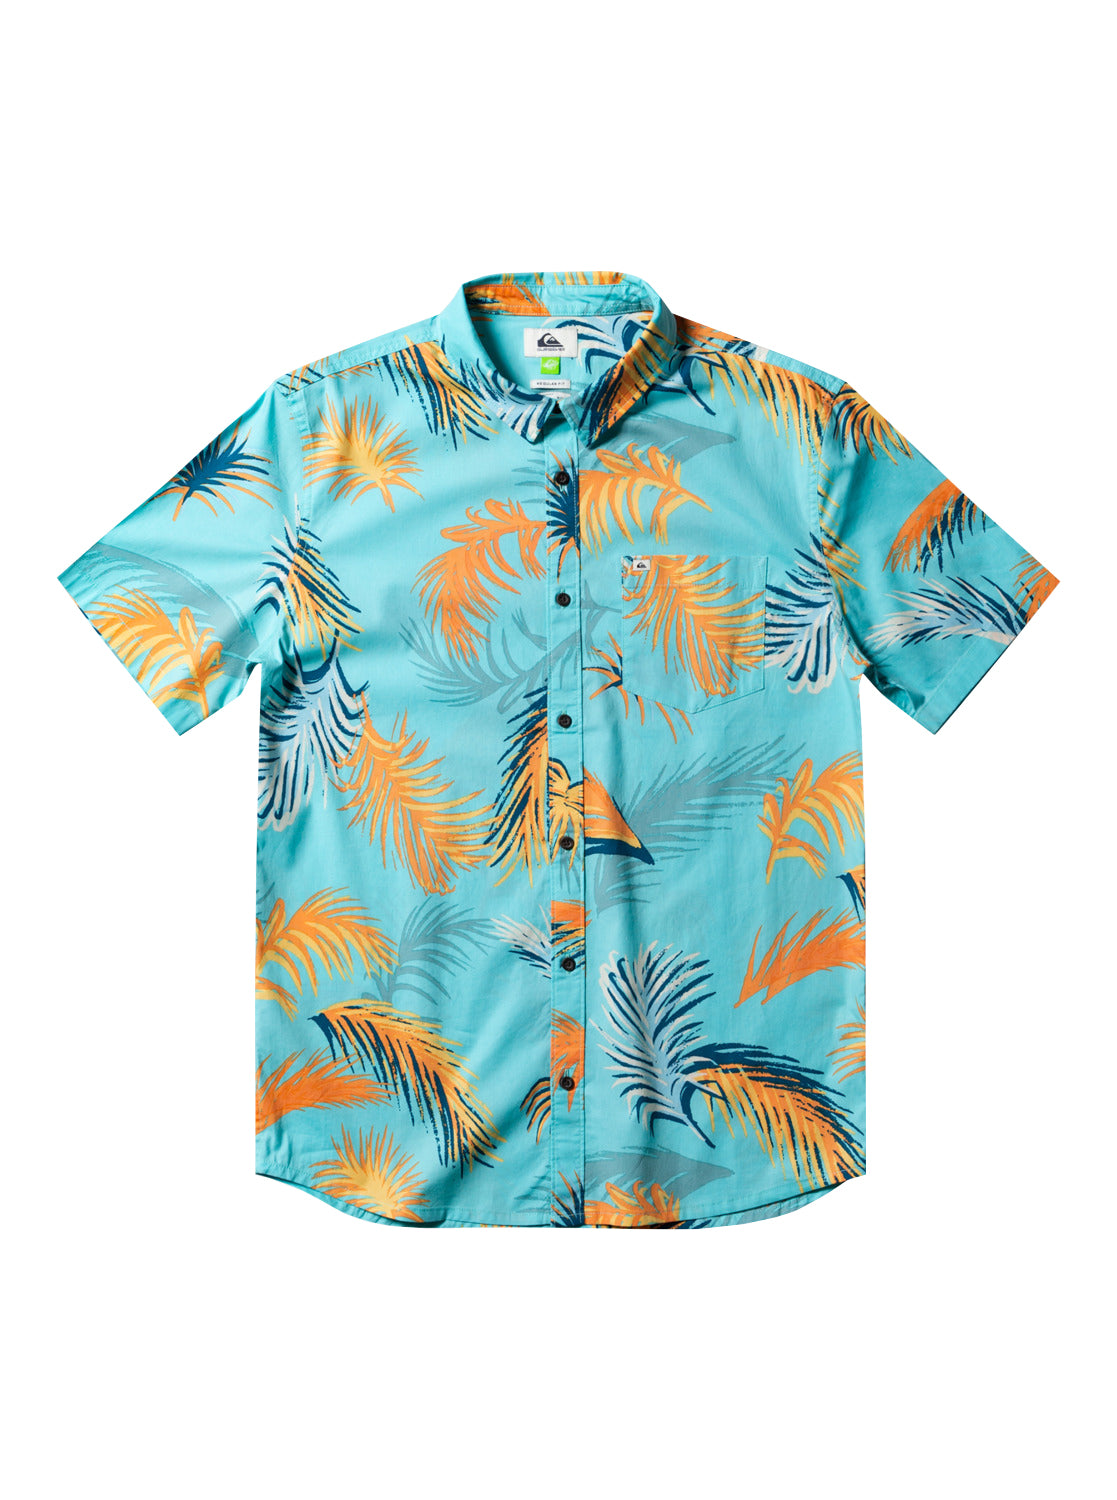 Quiksilver Tropical Gultch SS Shirt BGD6 L